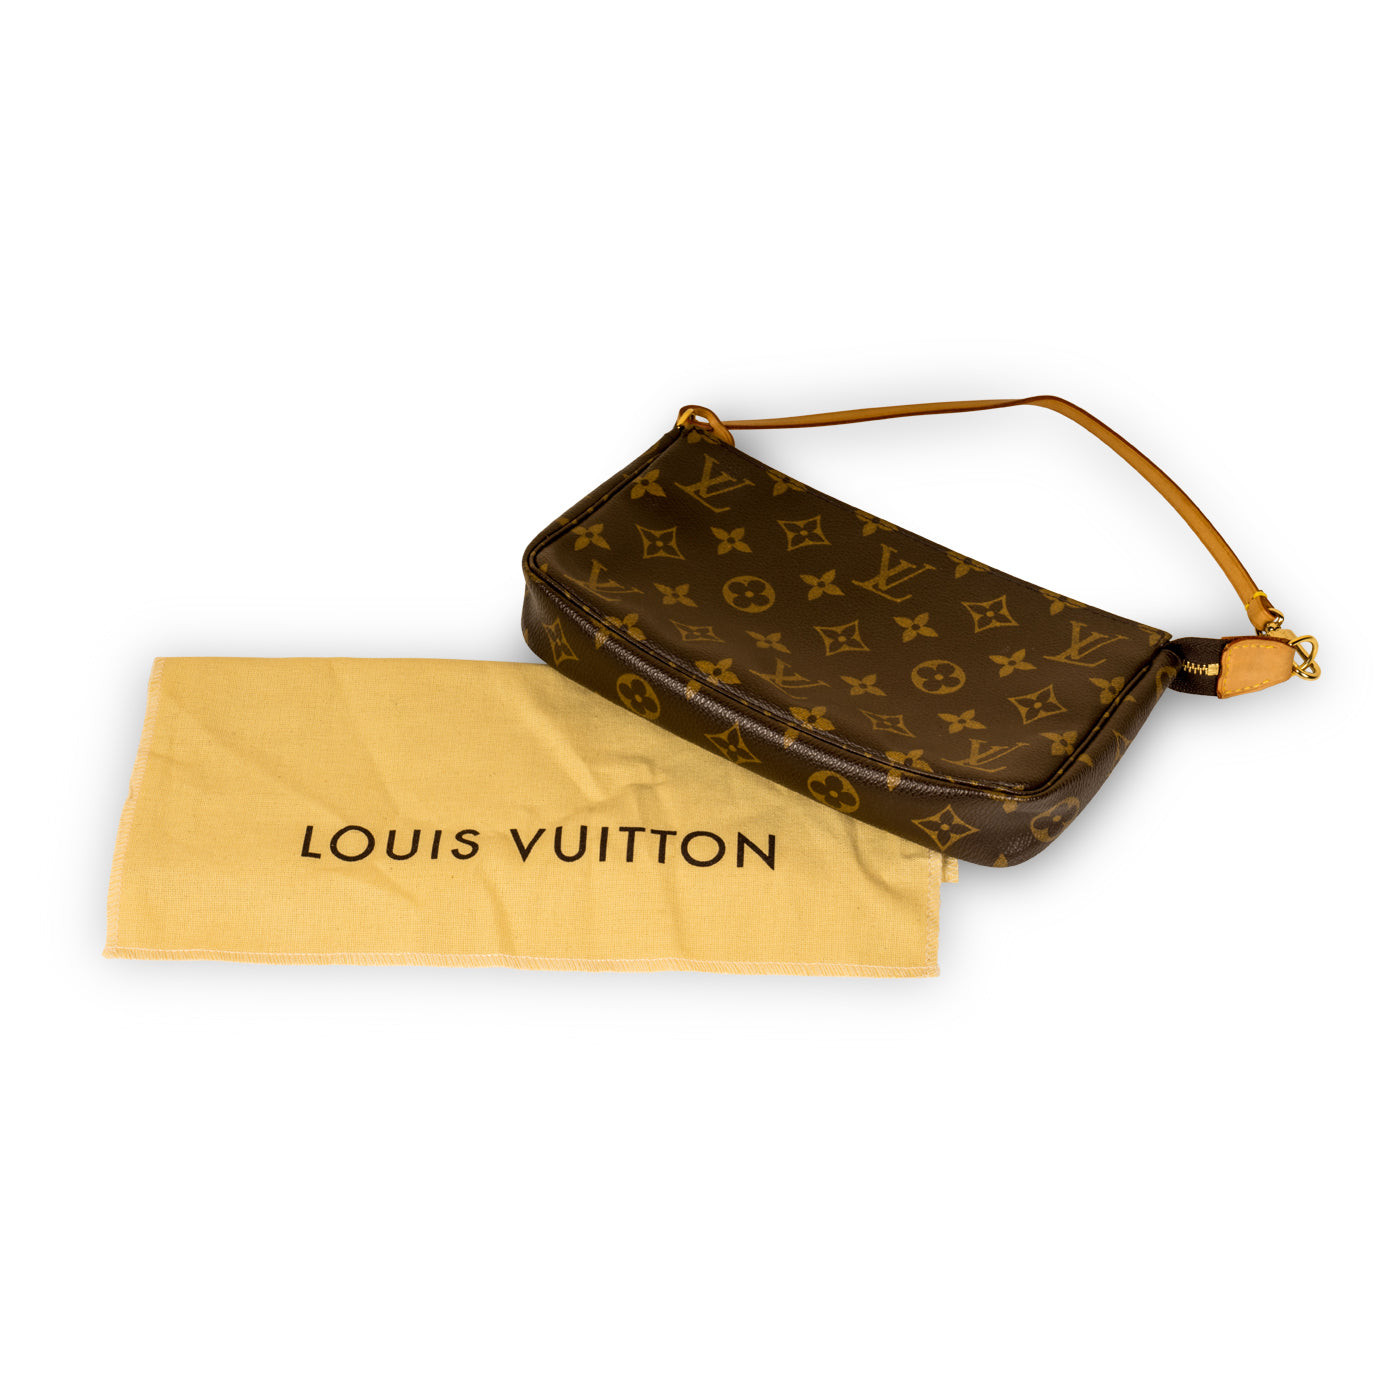 Louis Vuitton - Mini Pochette in Monogram - Pre-Loved